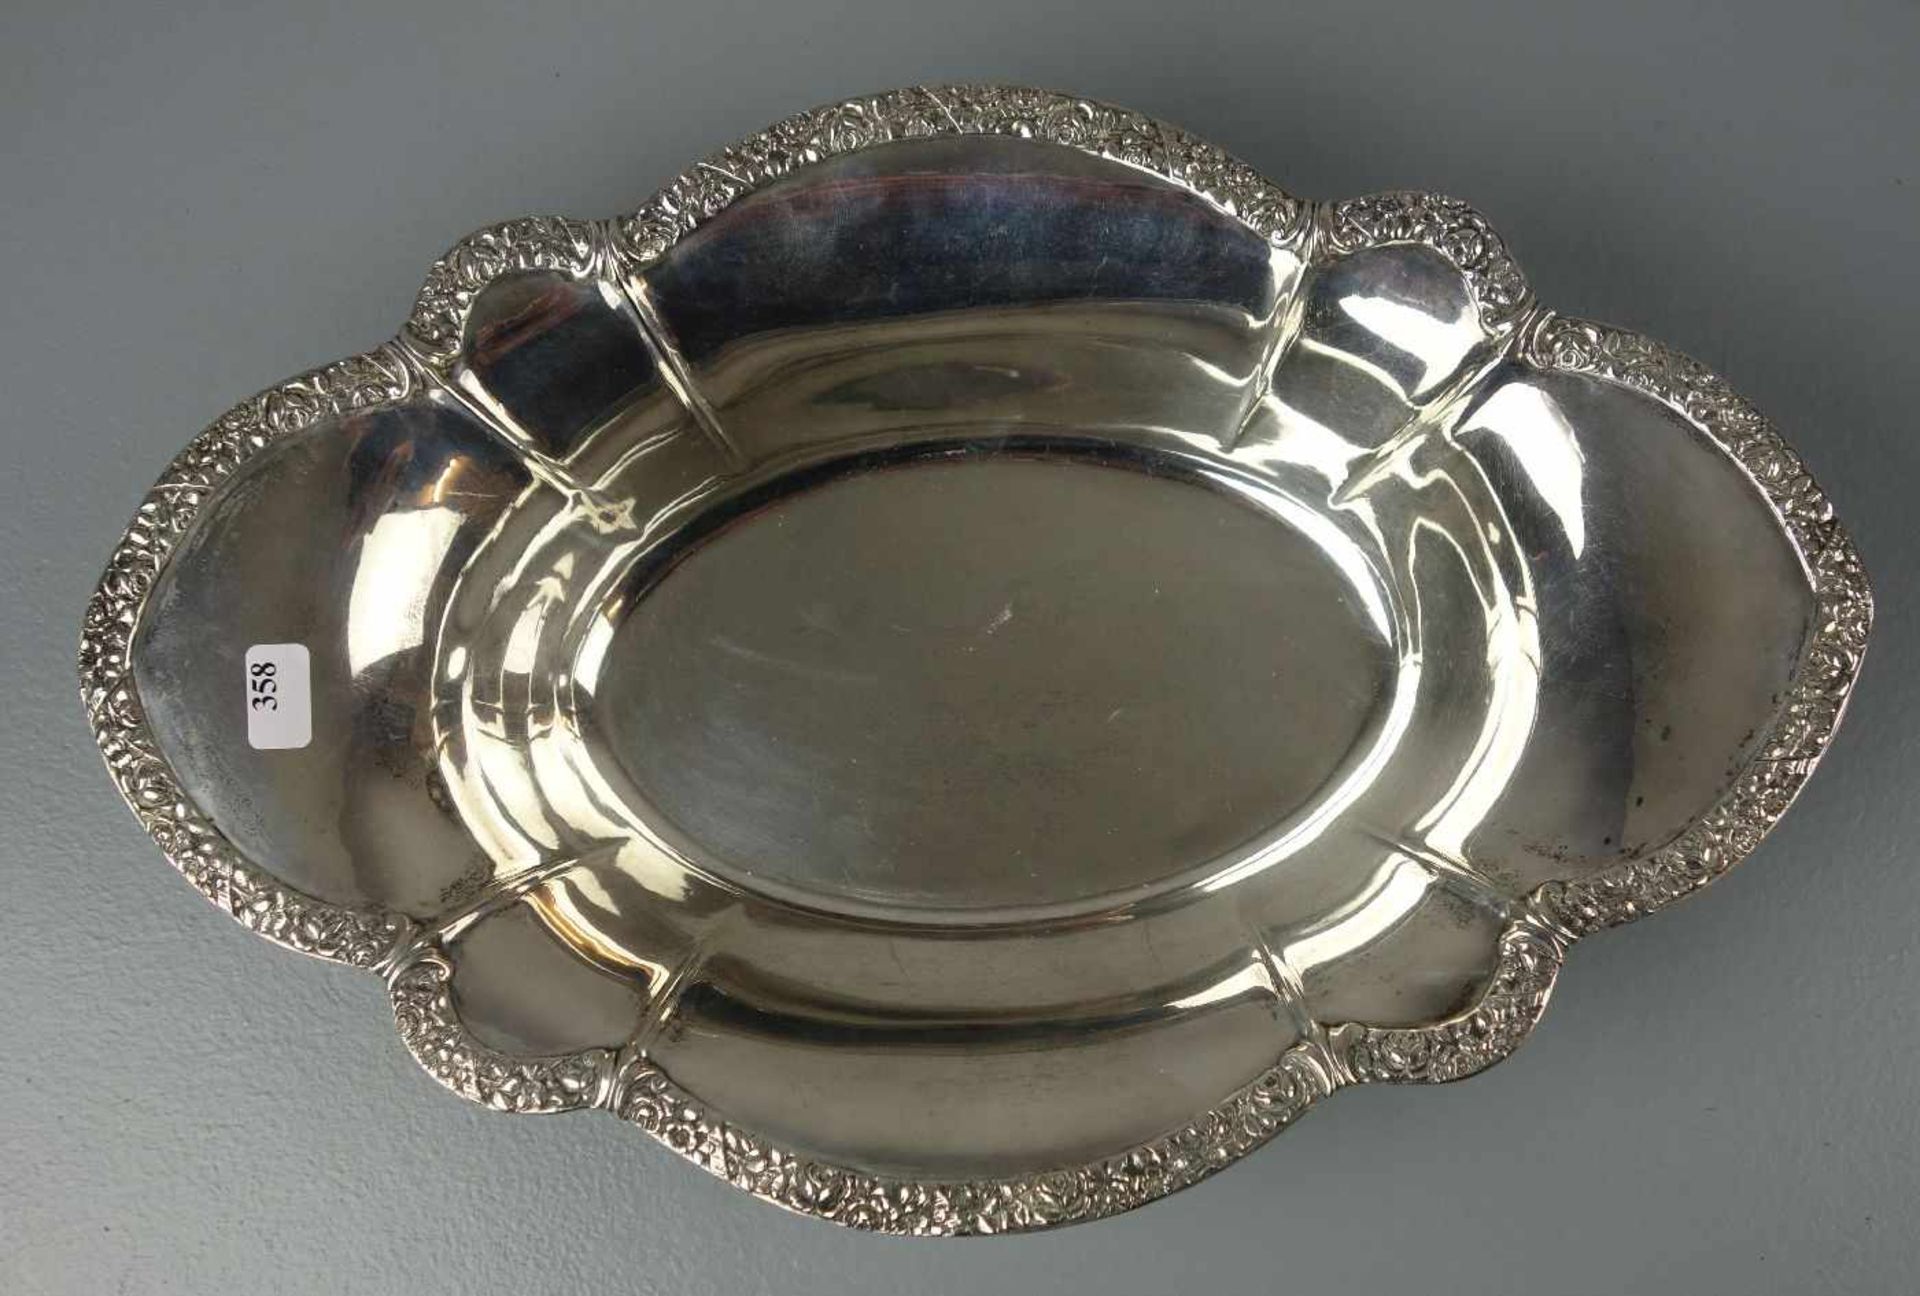 SCHALE, 800er Silber (250 g), gepunzt mit Halbmond, Krone, Feingehaltsangabe und Herstellermarke - Image 2 of 4